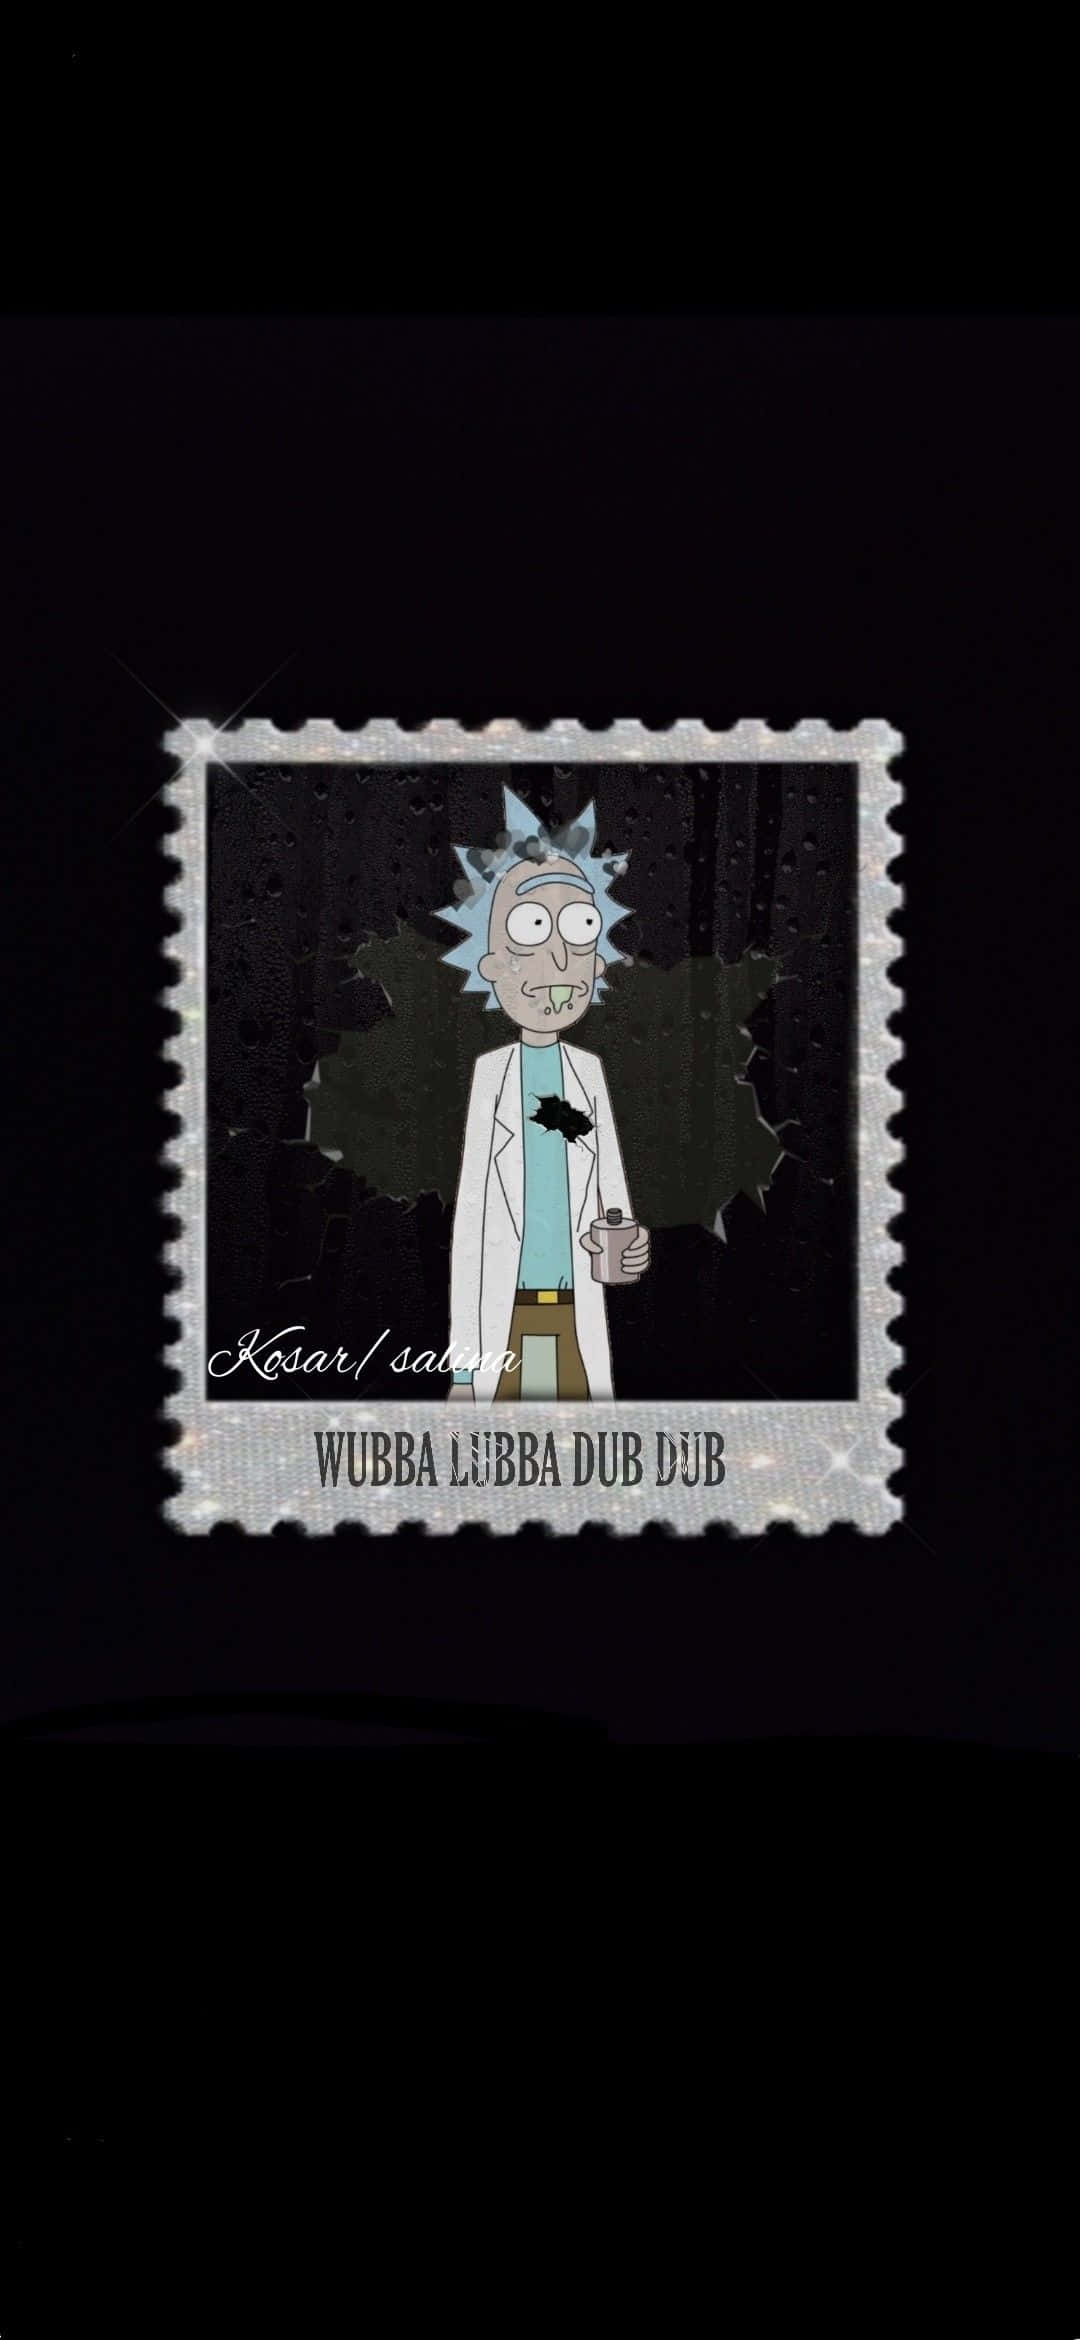 Rick and Morty Wubba Lubba Dub Dub Adventure Wallpaper